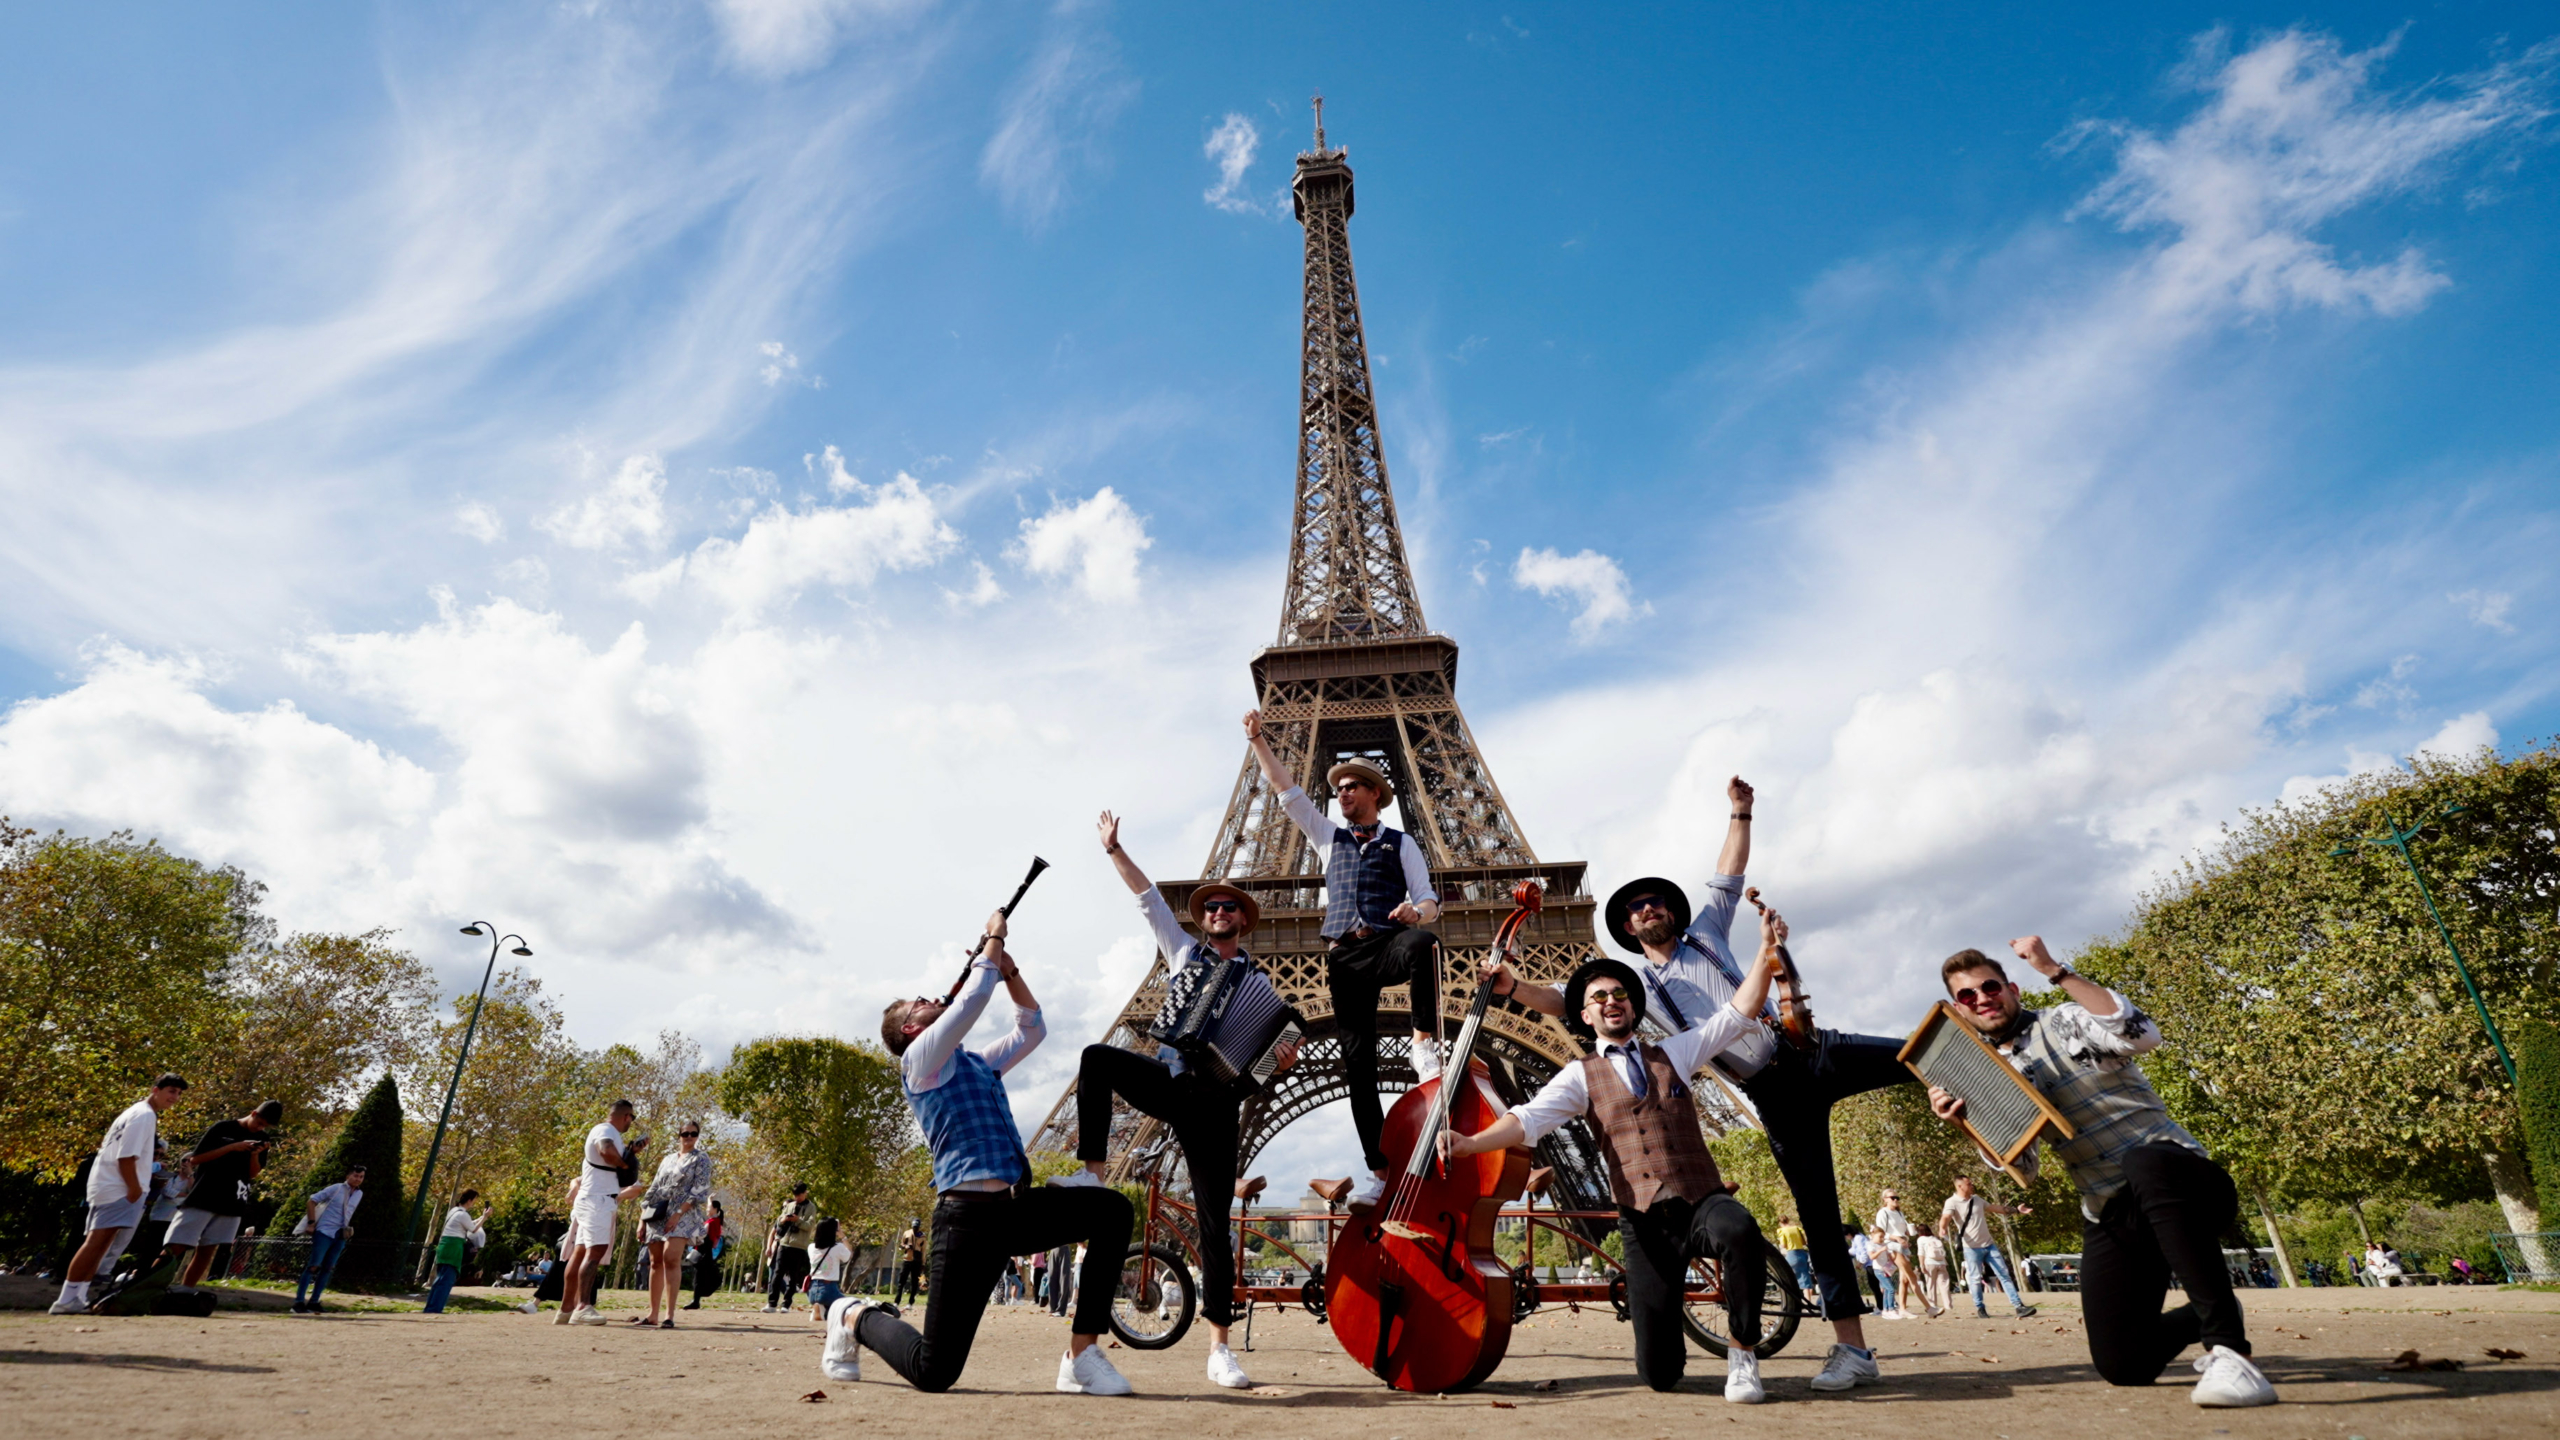 Ngày thứ bảy của Ban nhạc Big Bike, tại Tháp Eiffel ở Paris. (Ảnh: Đăng dưới sự cho phép của Ban nhạc Big Bike)